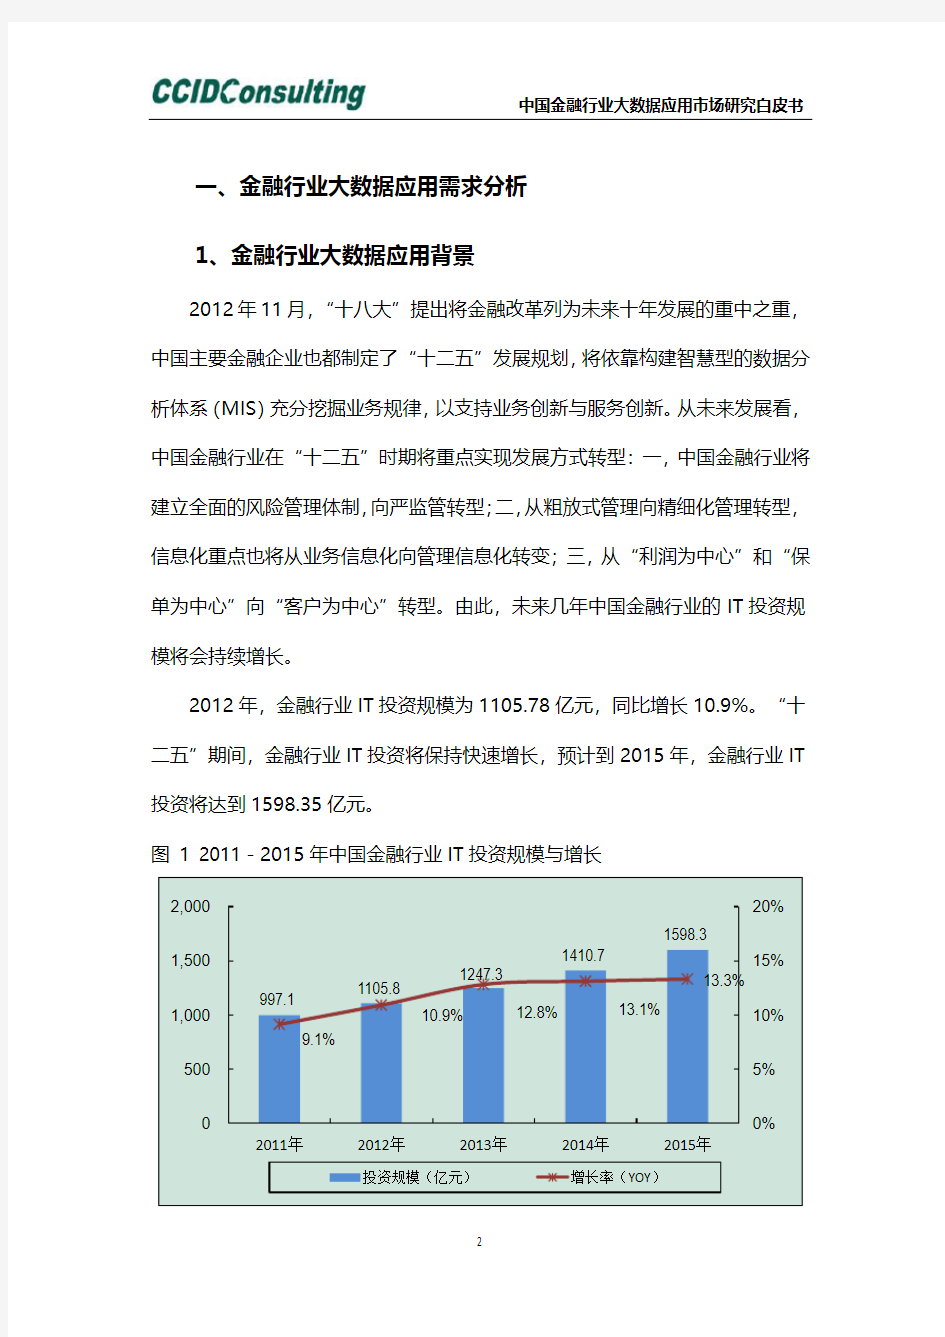 中国金融行业大数据应用市场研究白皮书-Intel